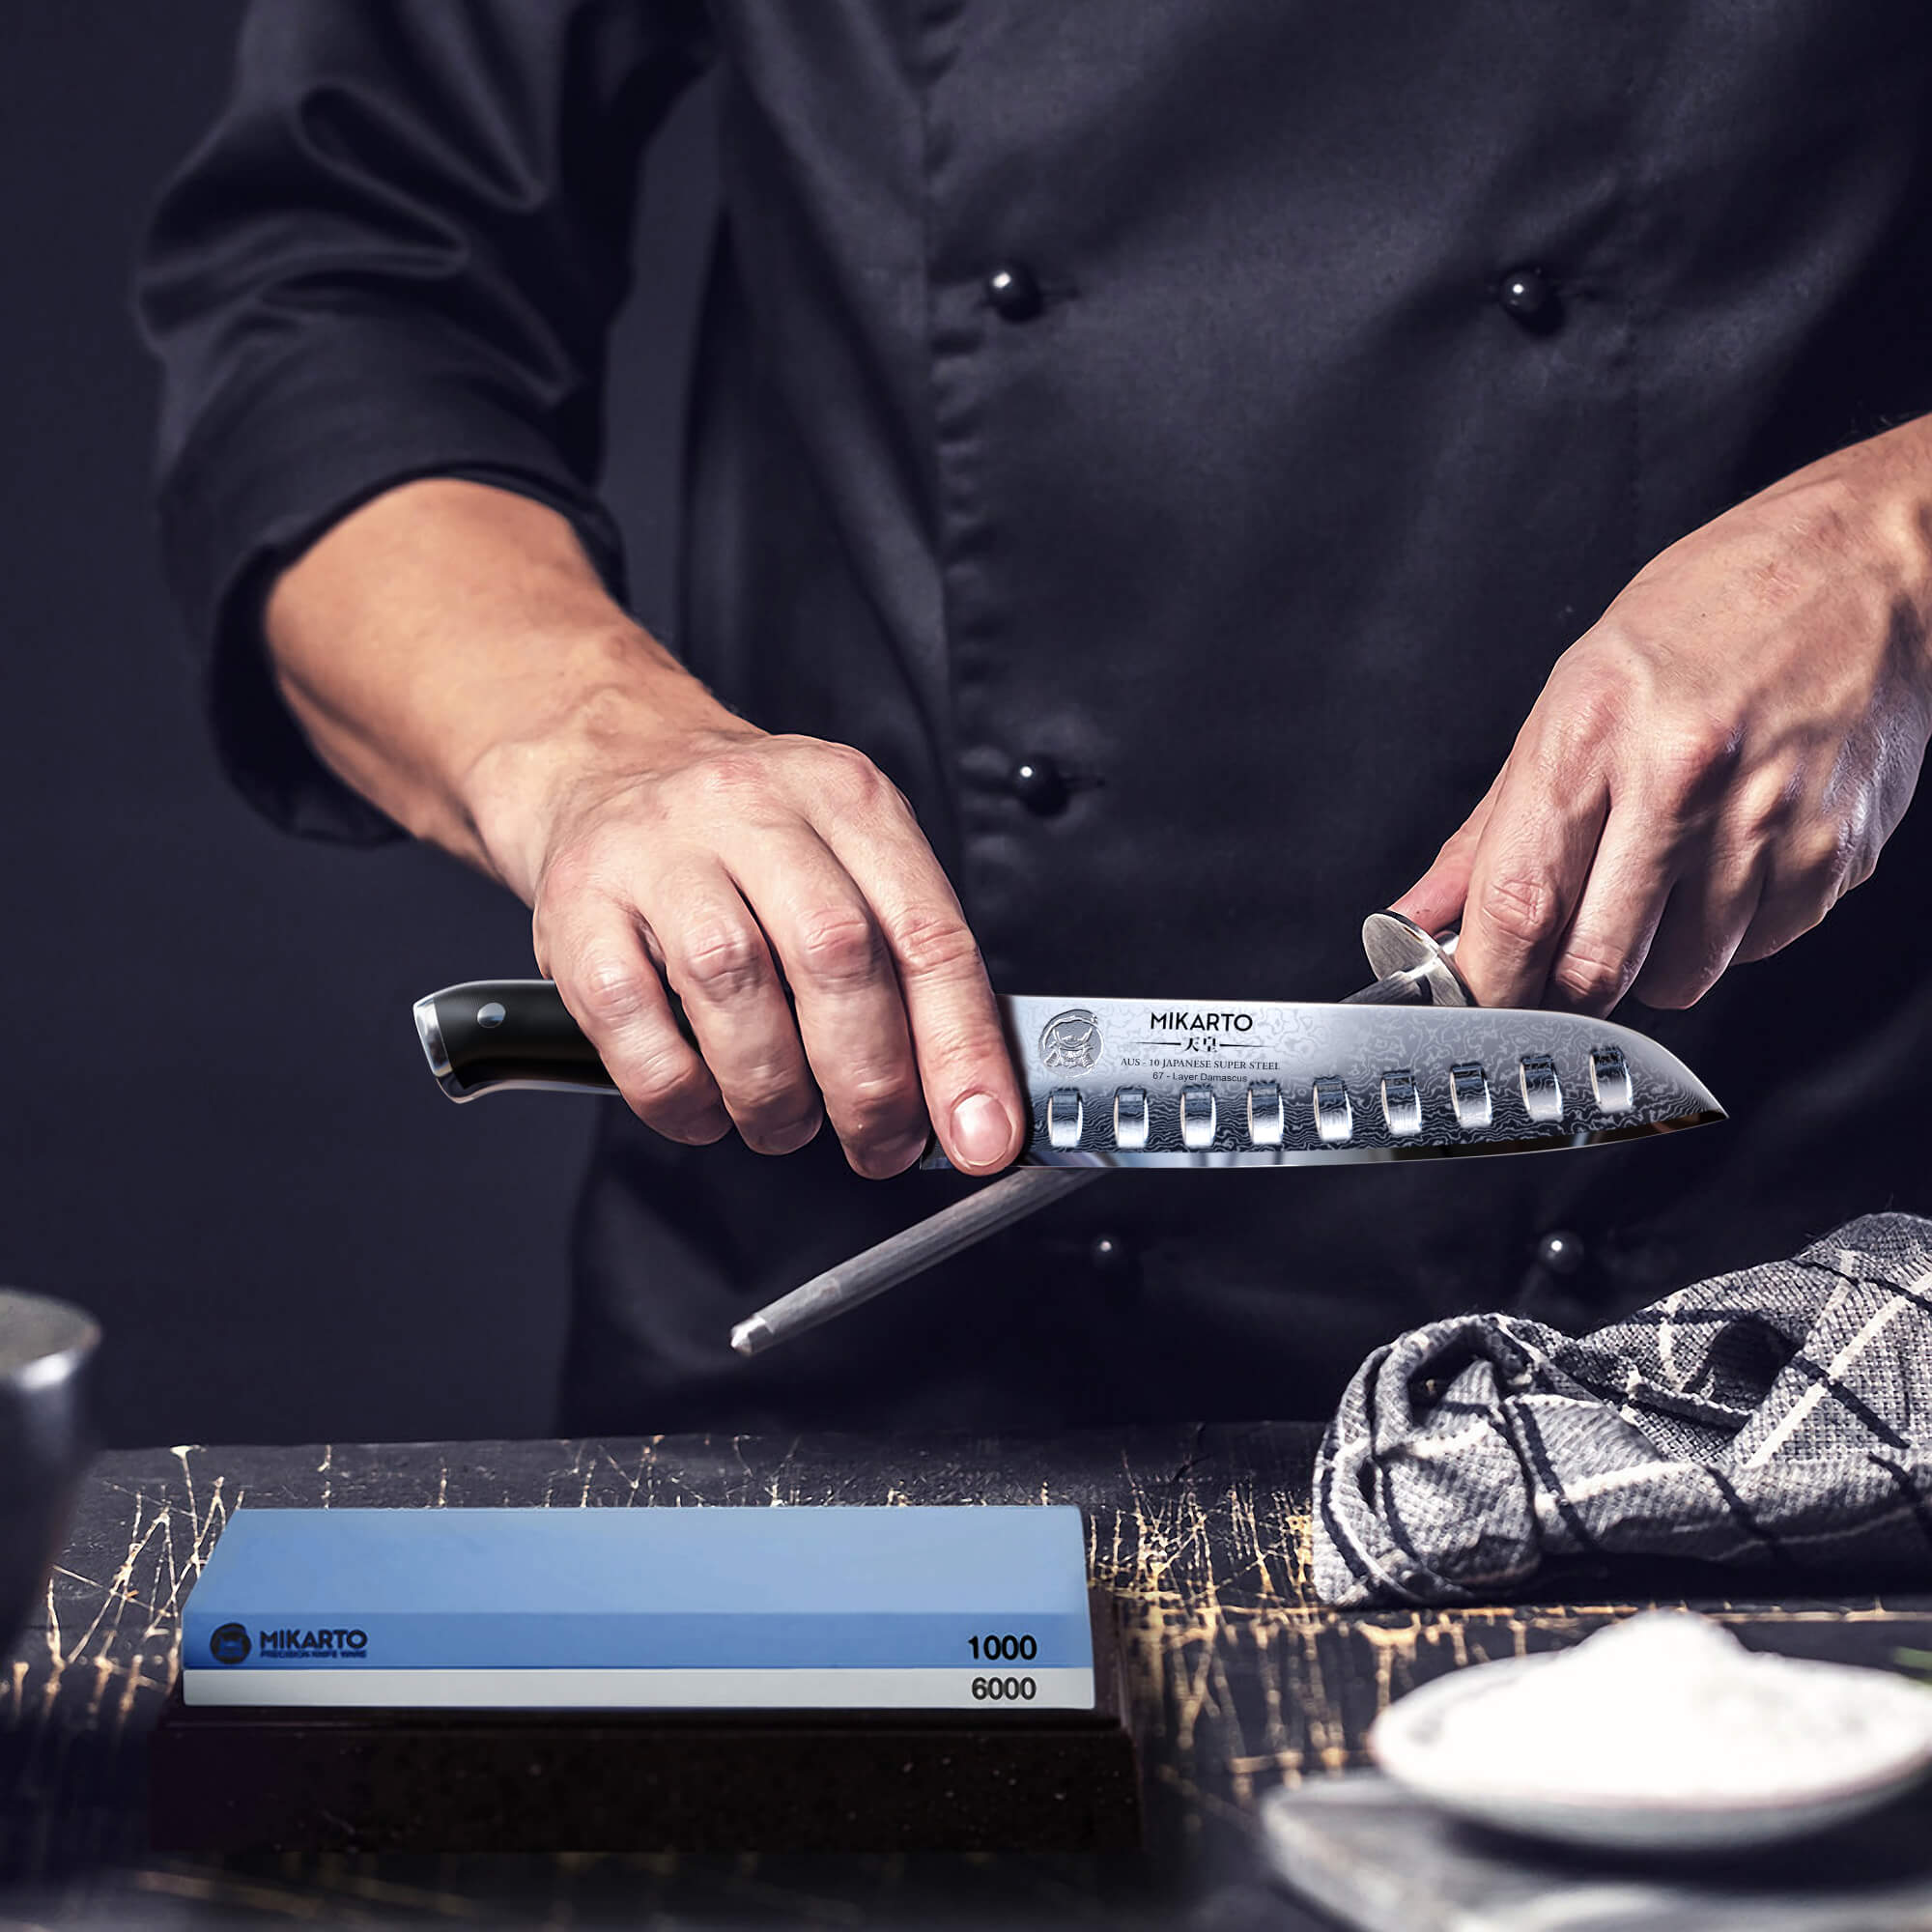 Santoku Knife - MAD SHARK Pro Kitchen Knives 7 Inch Chef's Knife